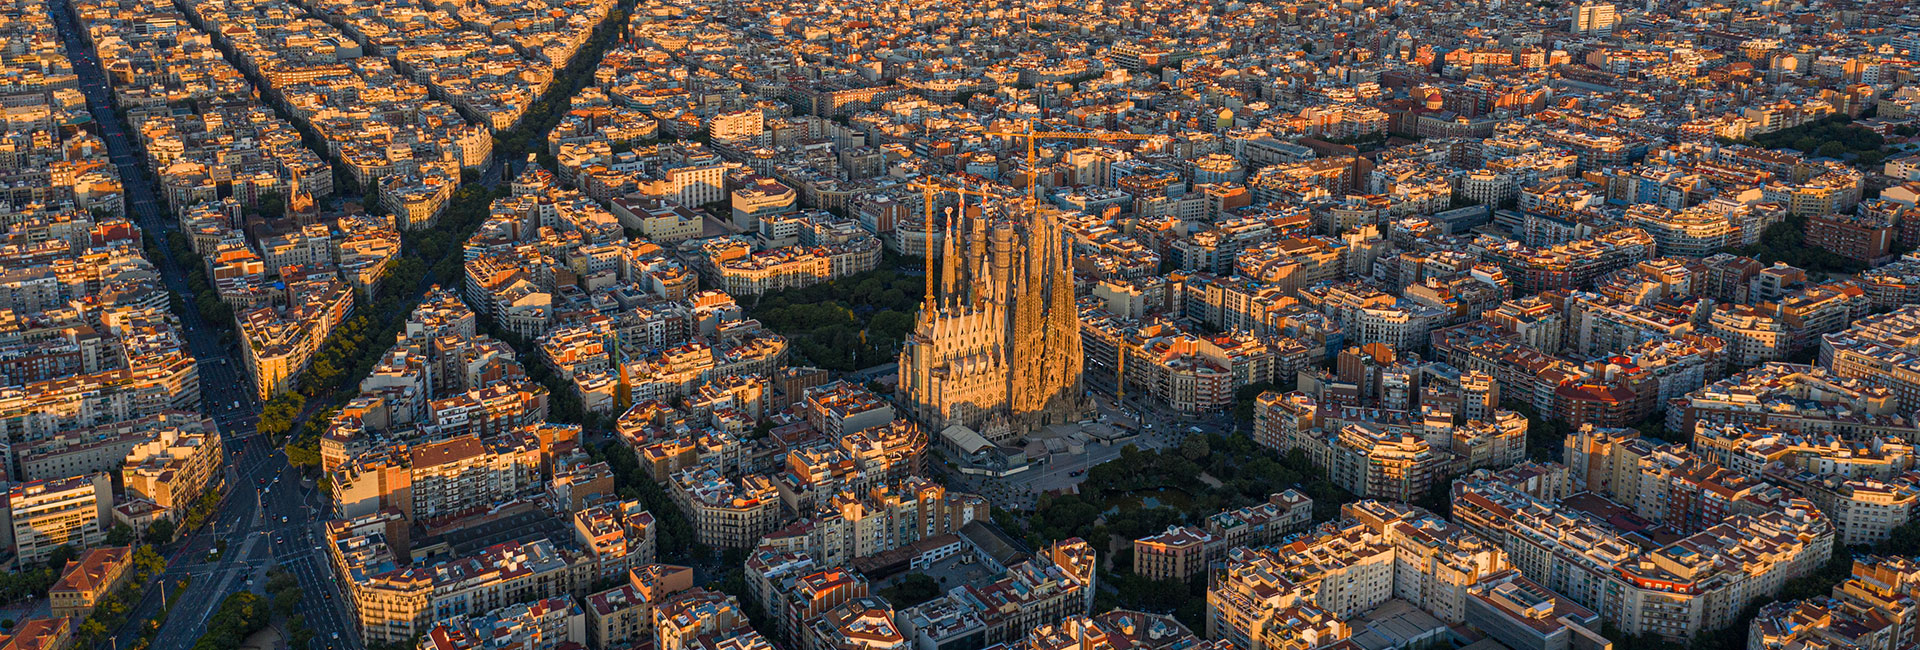 ¿Por qué invertir en vivienda en Barcelona?